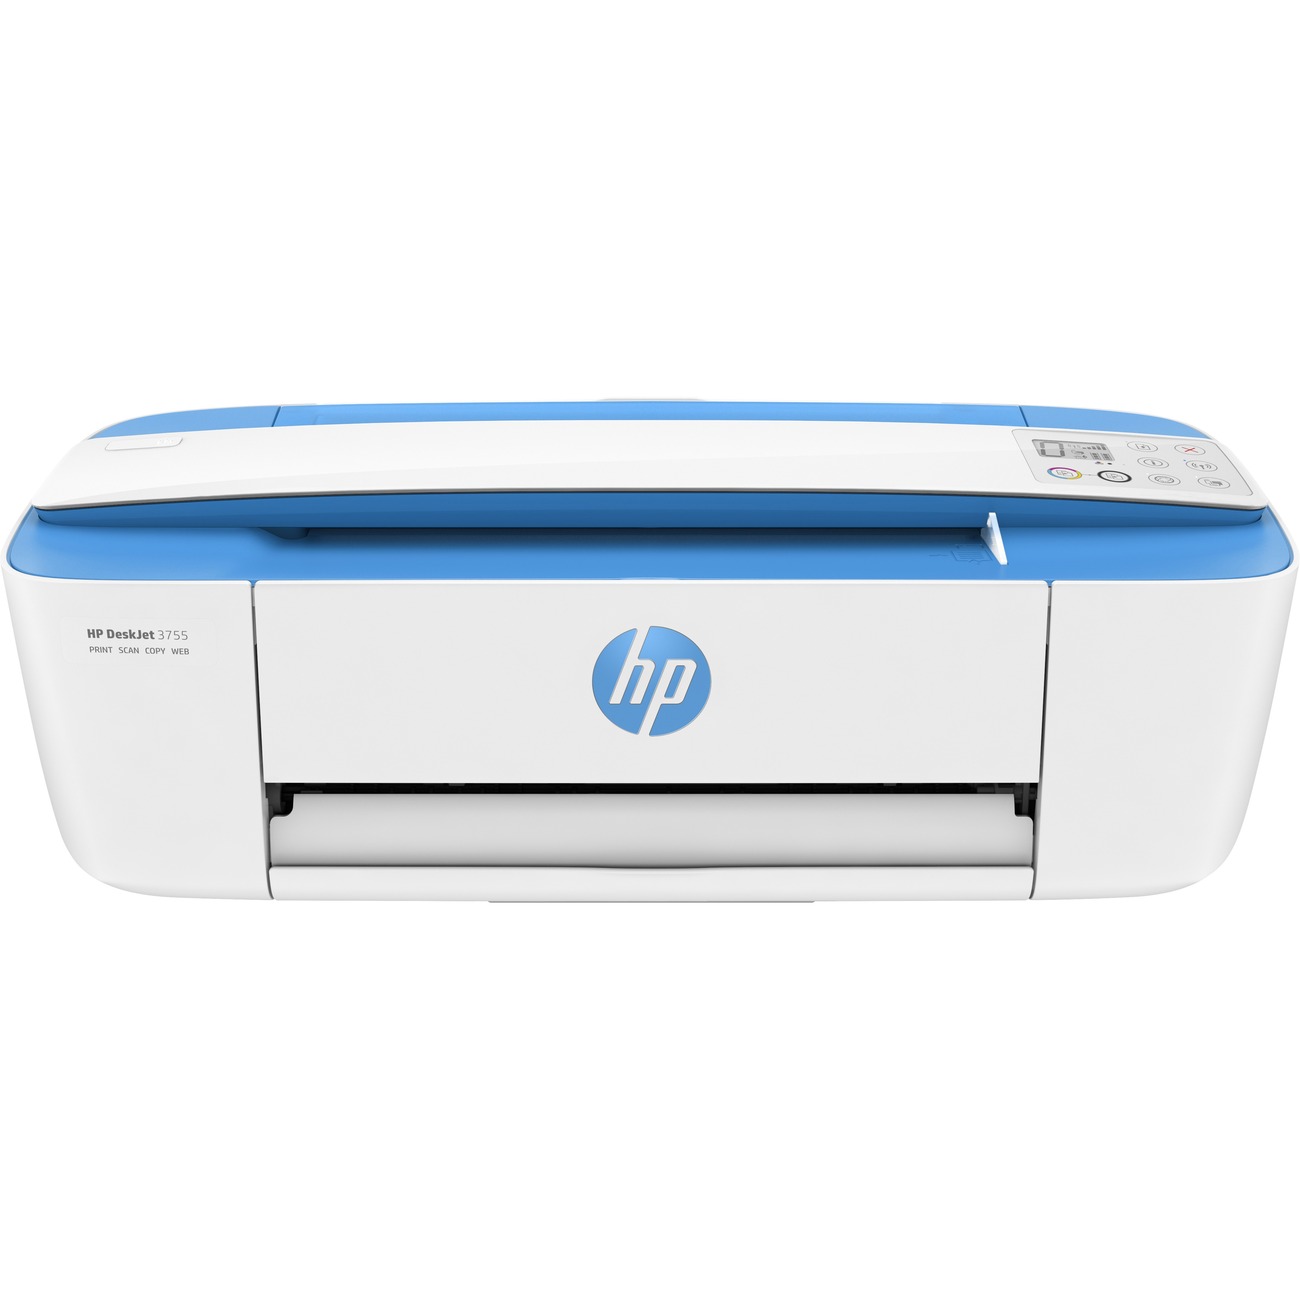 HP Deskjet 3755 Inkjet Multifunction Printer - Color - Plain Paper Print - Desktop (j9v90a-b1h) - image 1 of 11